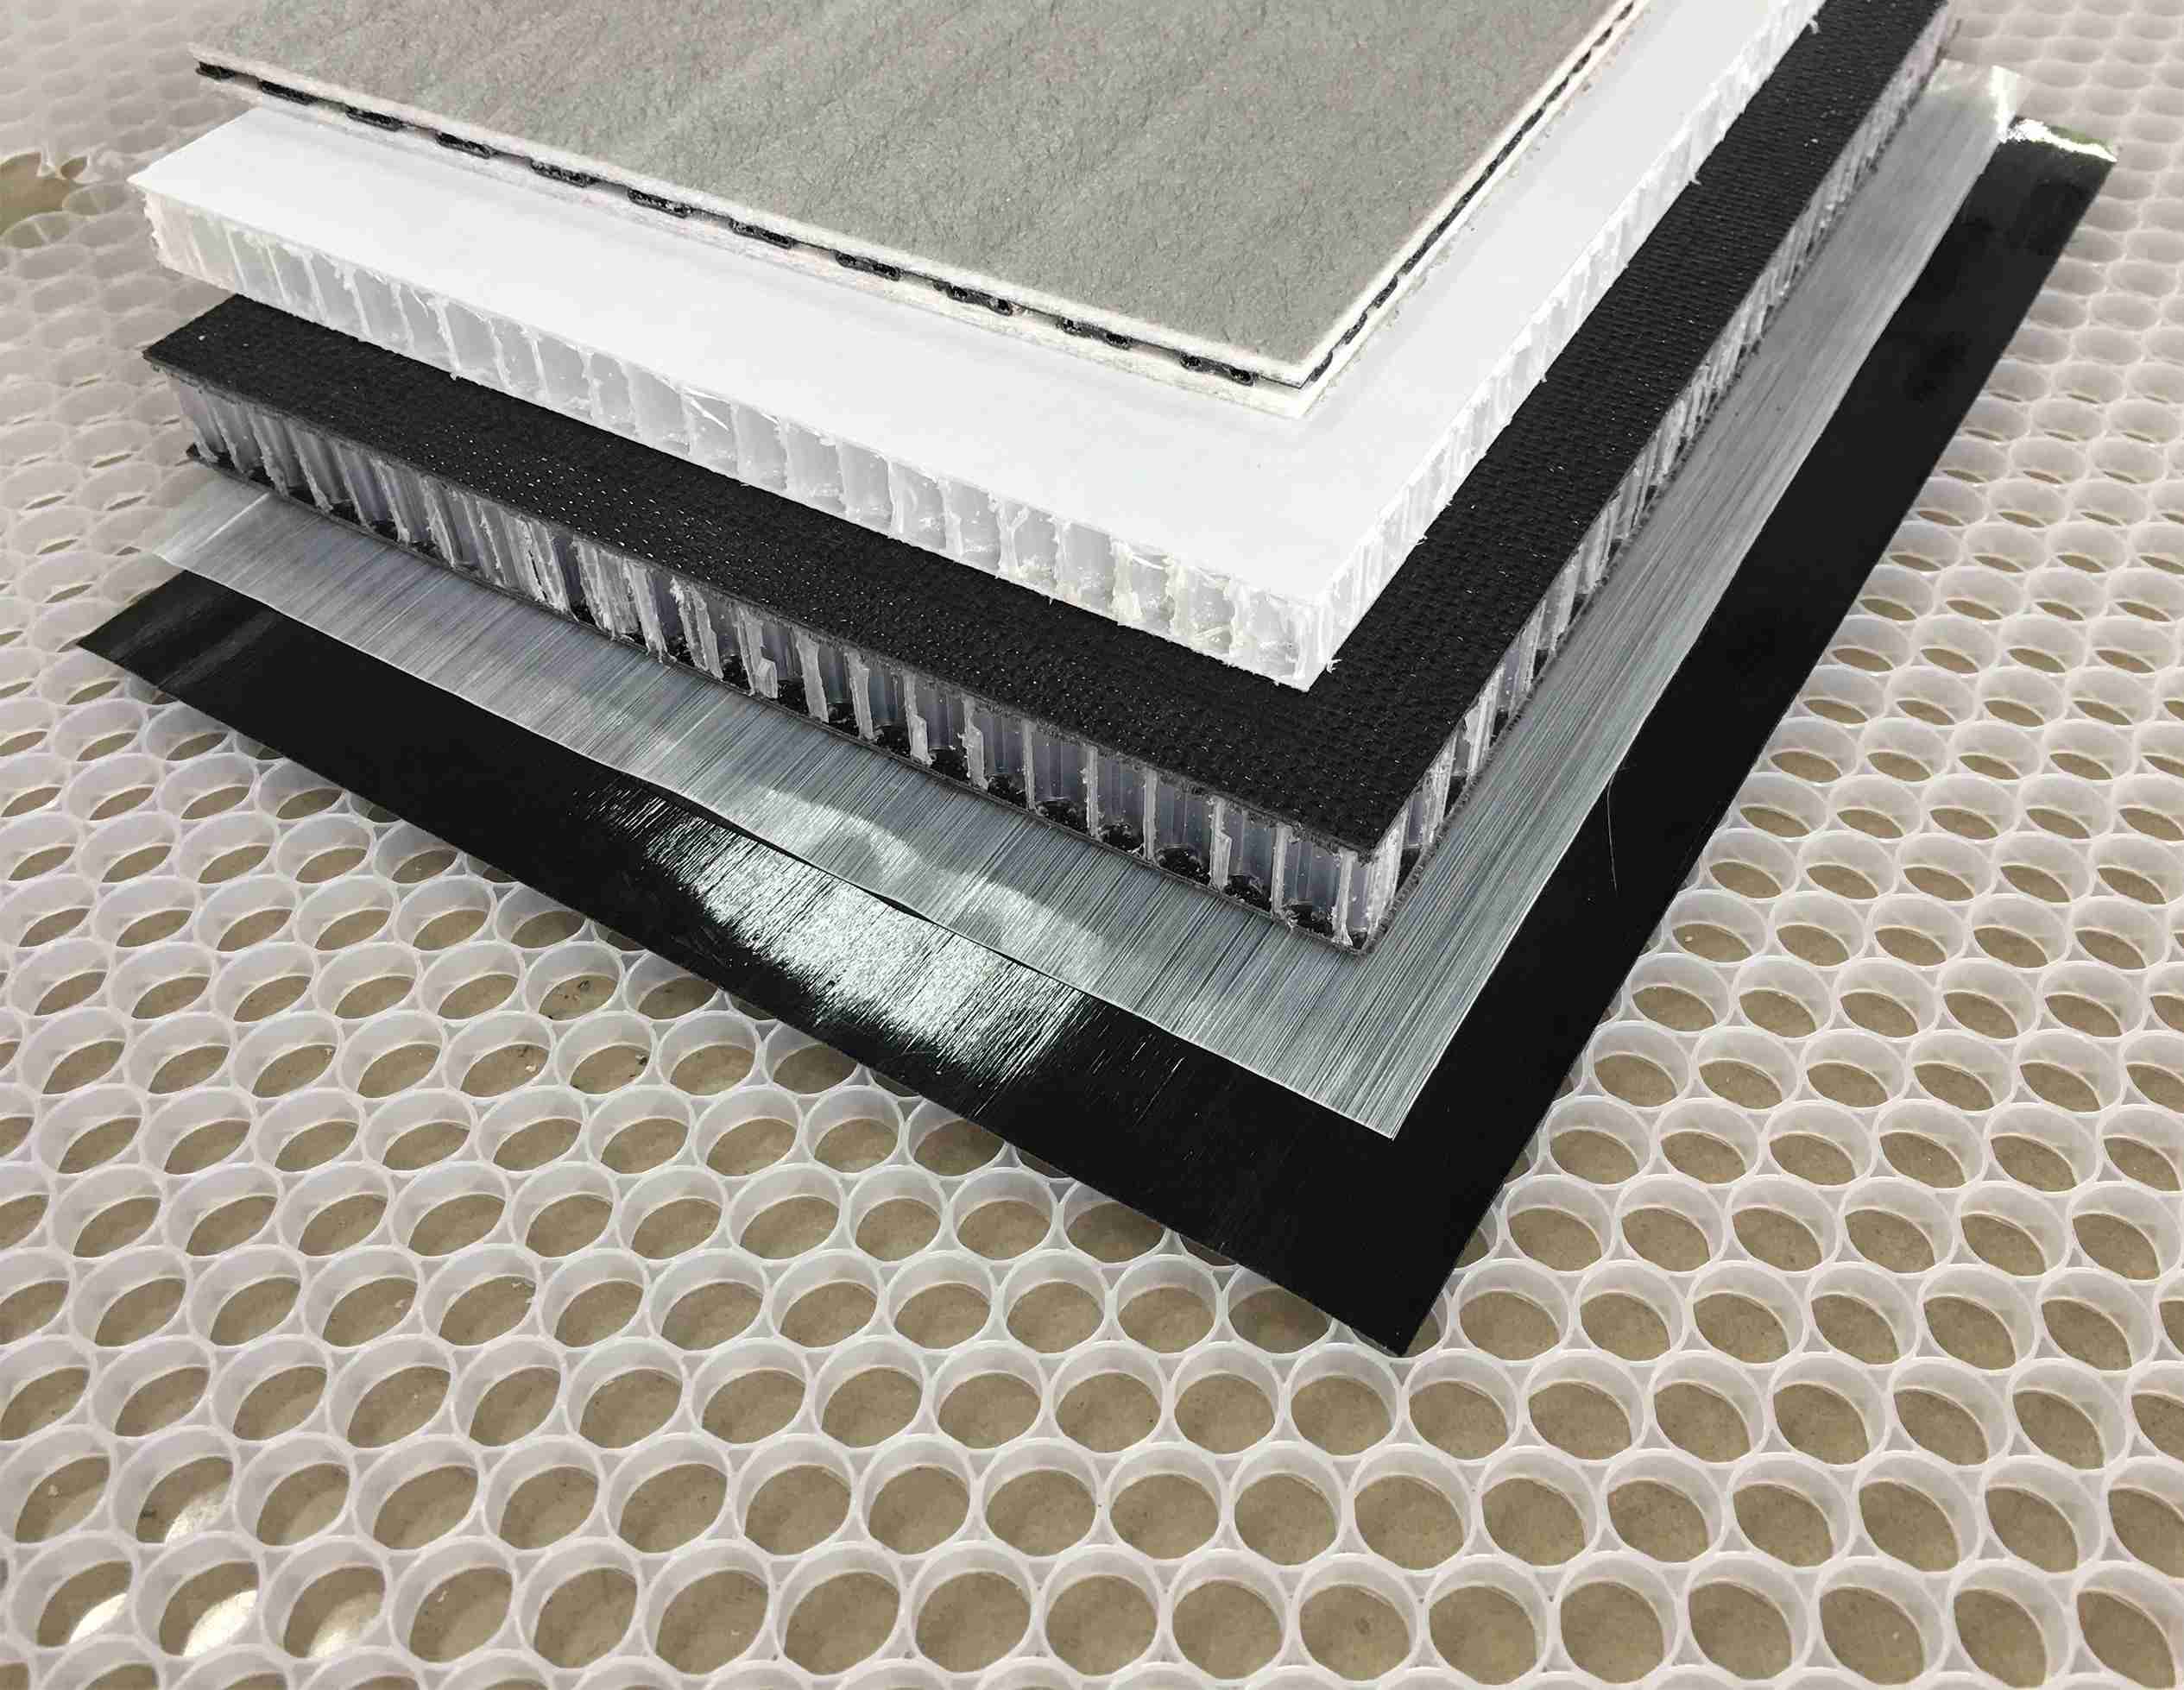 特氟龍雙皮帶復合機組用于生產熱塑性蜂窩三明治板和各類熱塑性復合材料層壓板